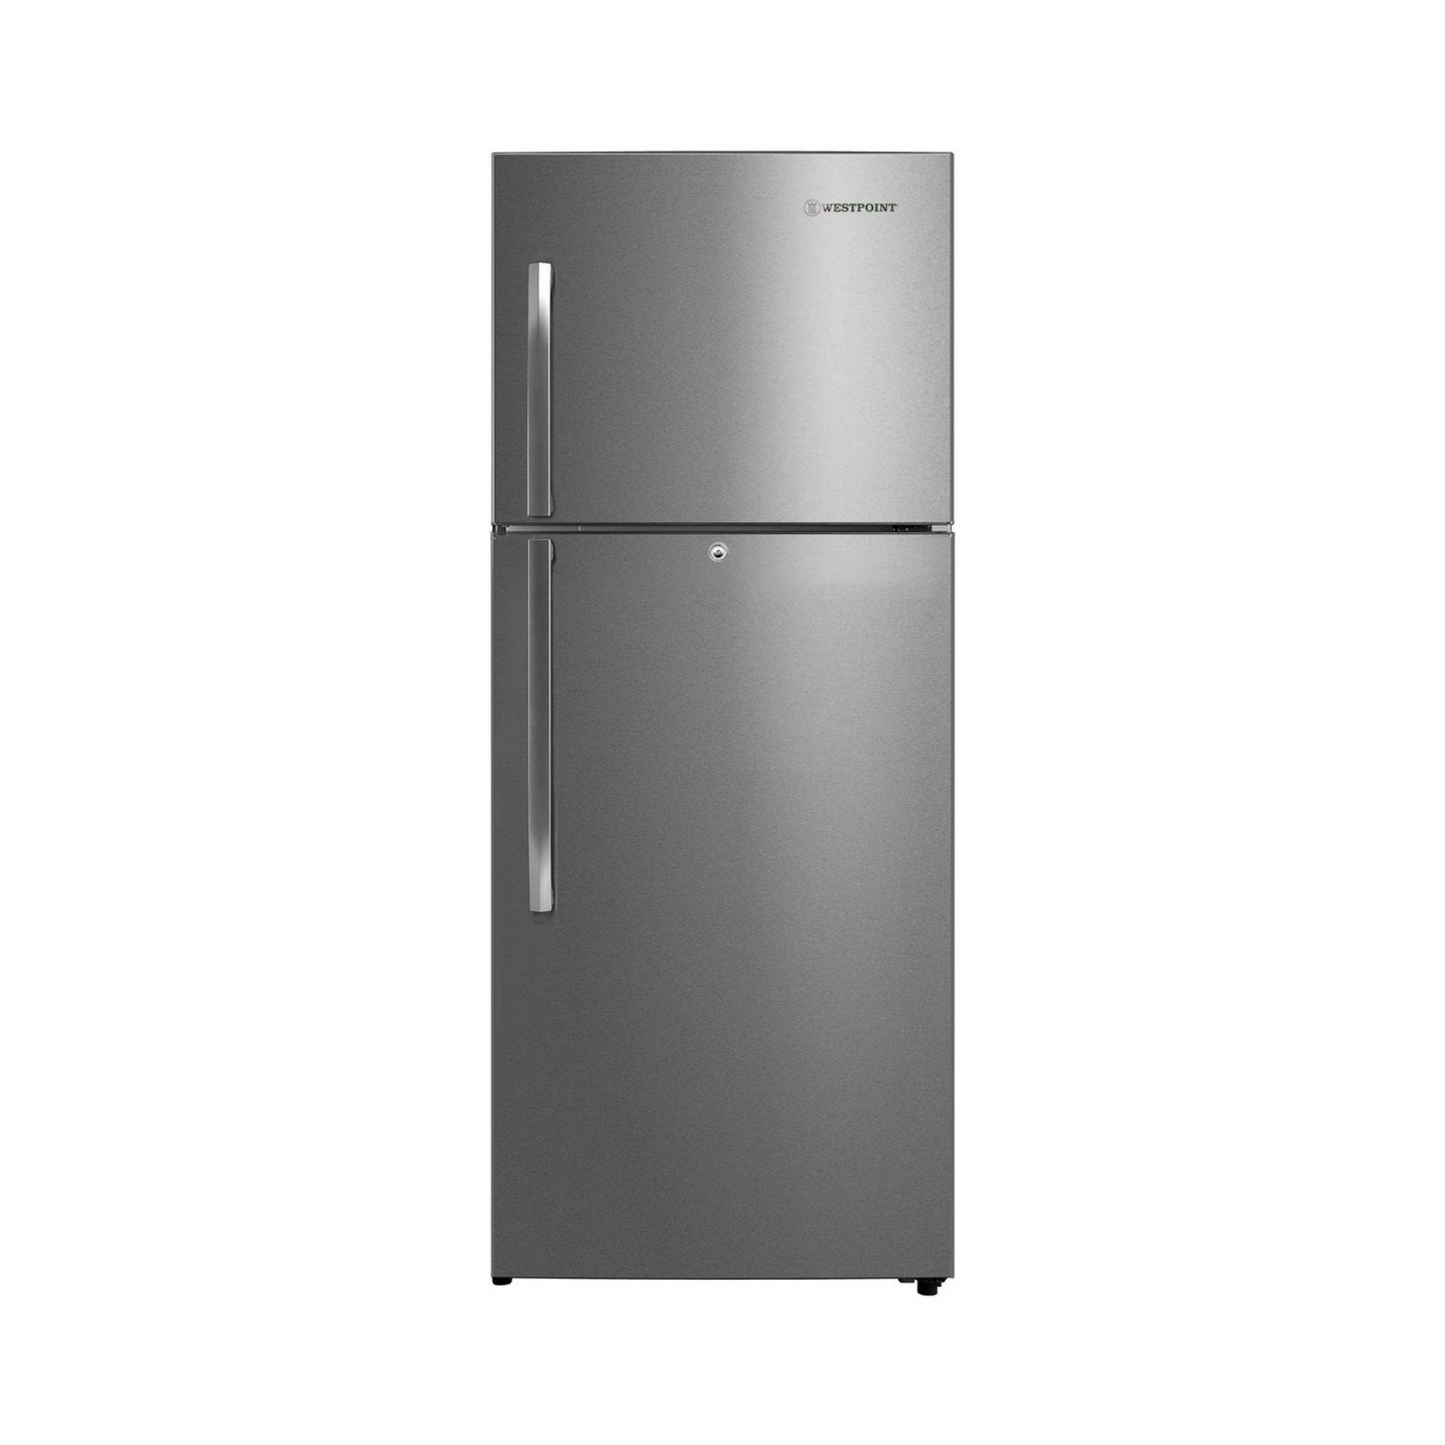 Westpoint 500L Double Door Inverter Refrigerator, WNN-5019EIV